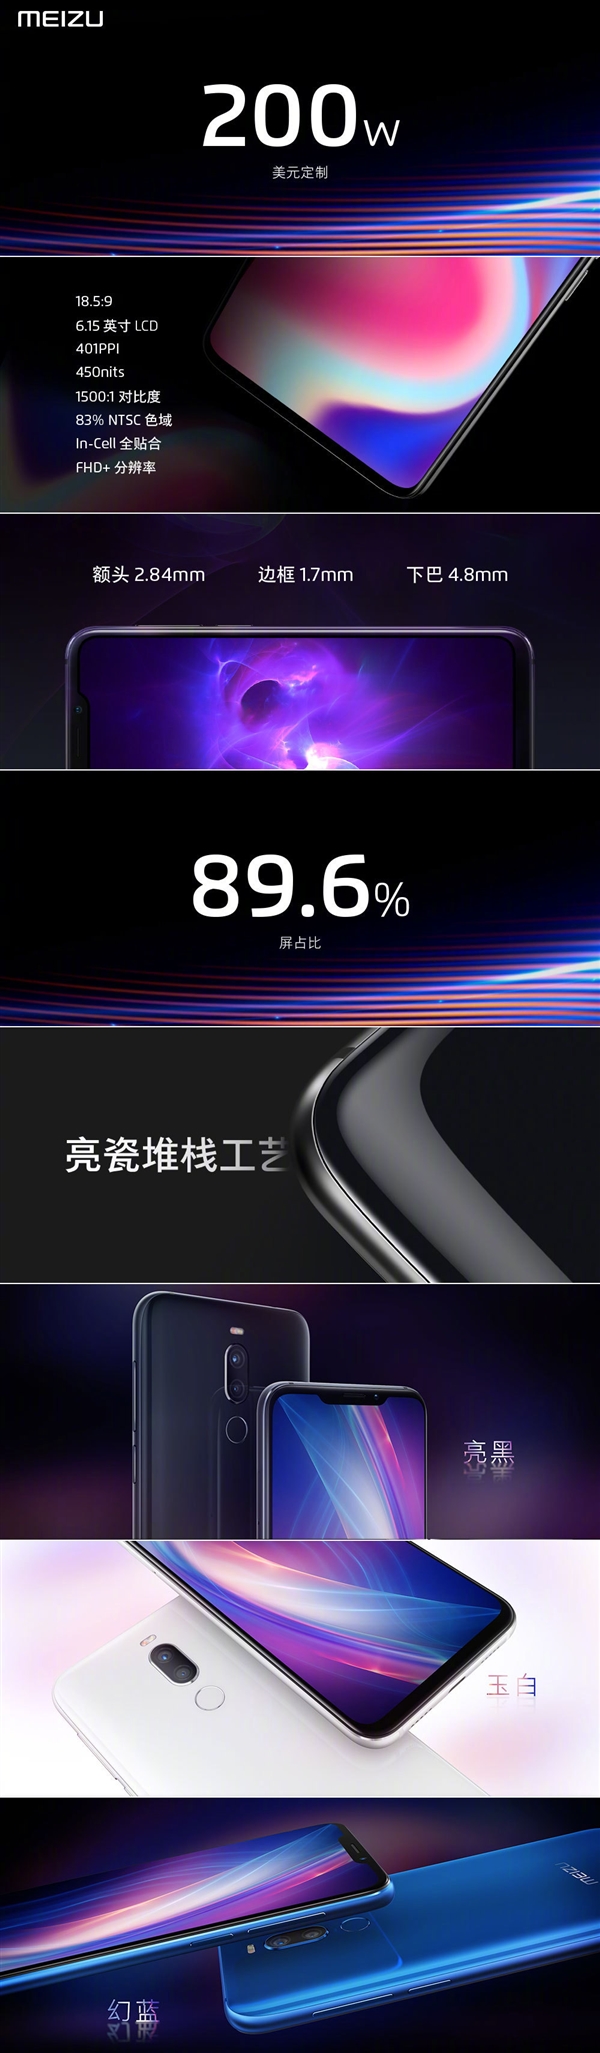 Анонс Meizu X8: первый с «монобровью» от Meizu на базе Snapdragon 710